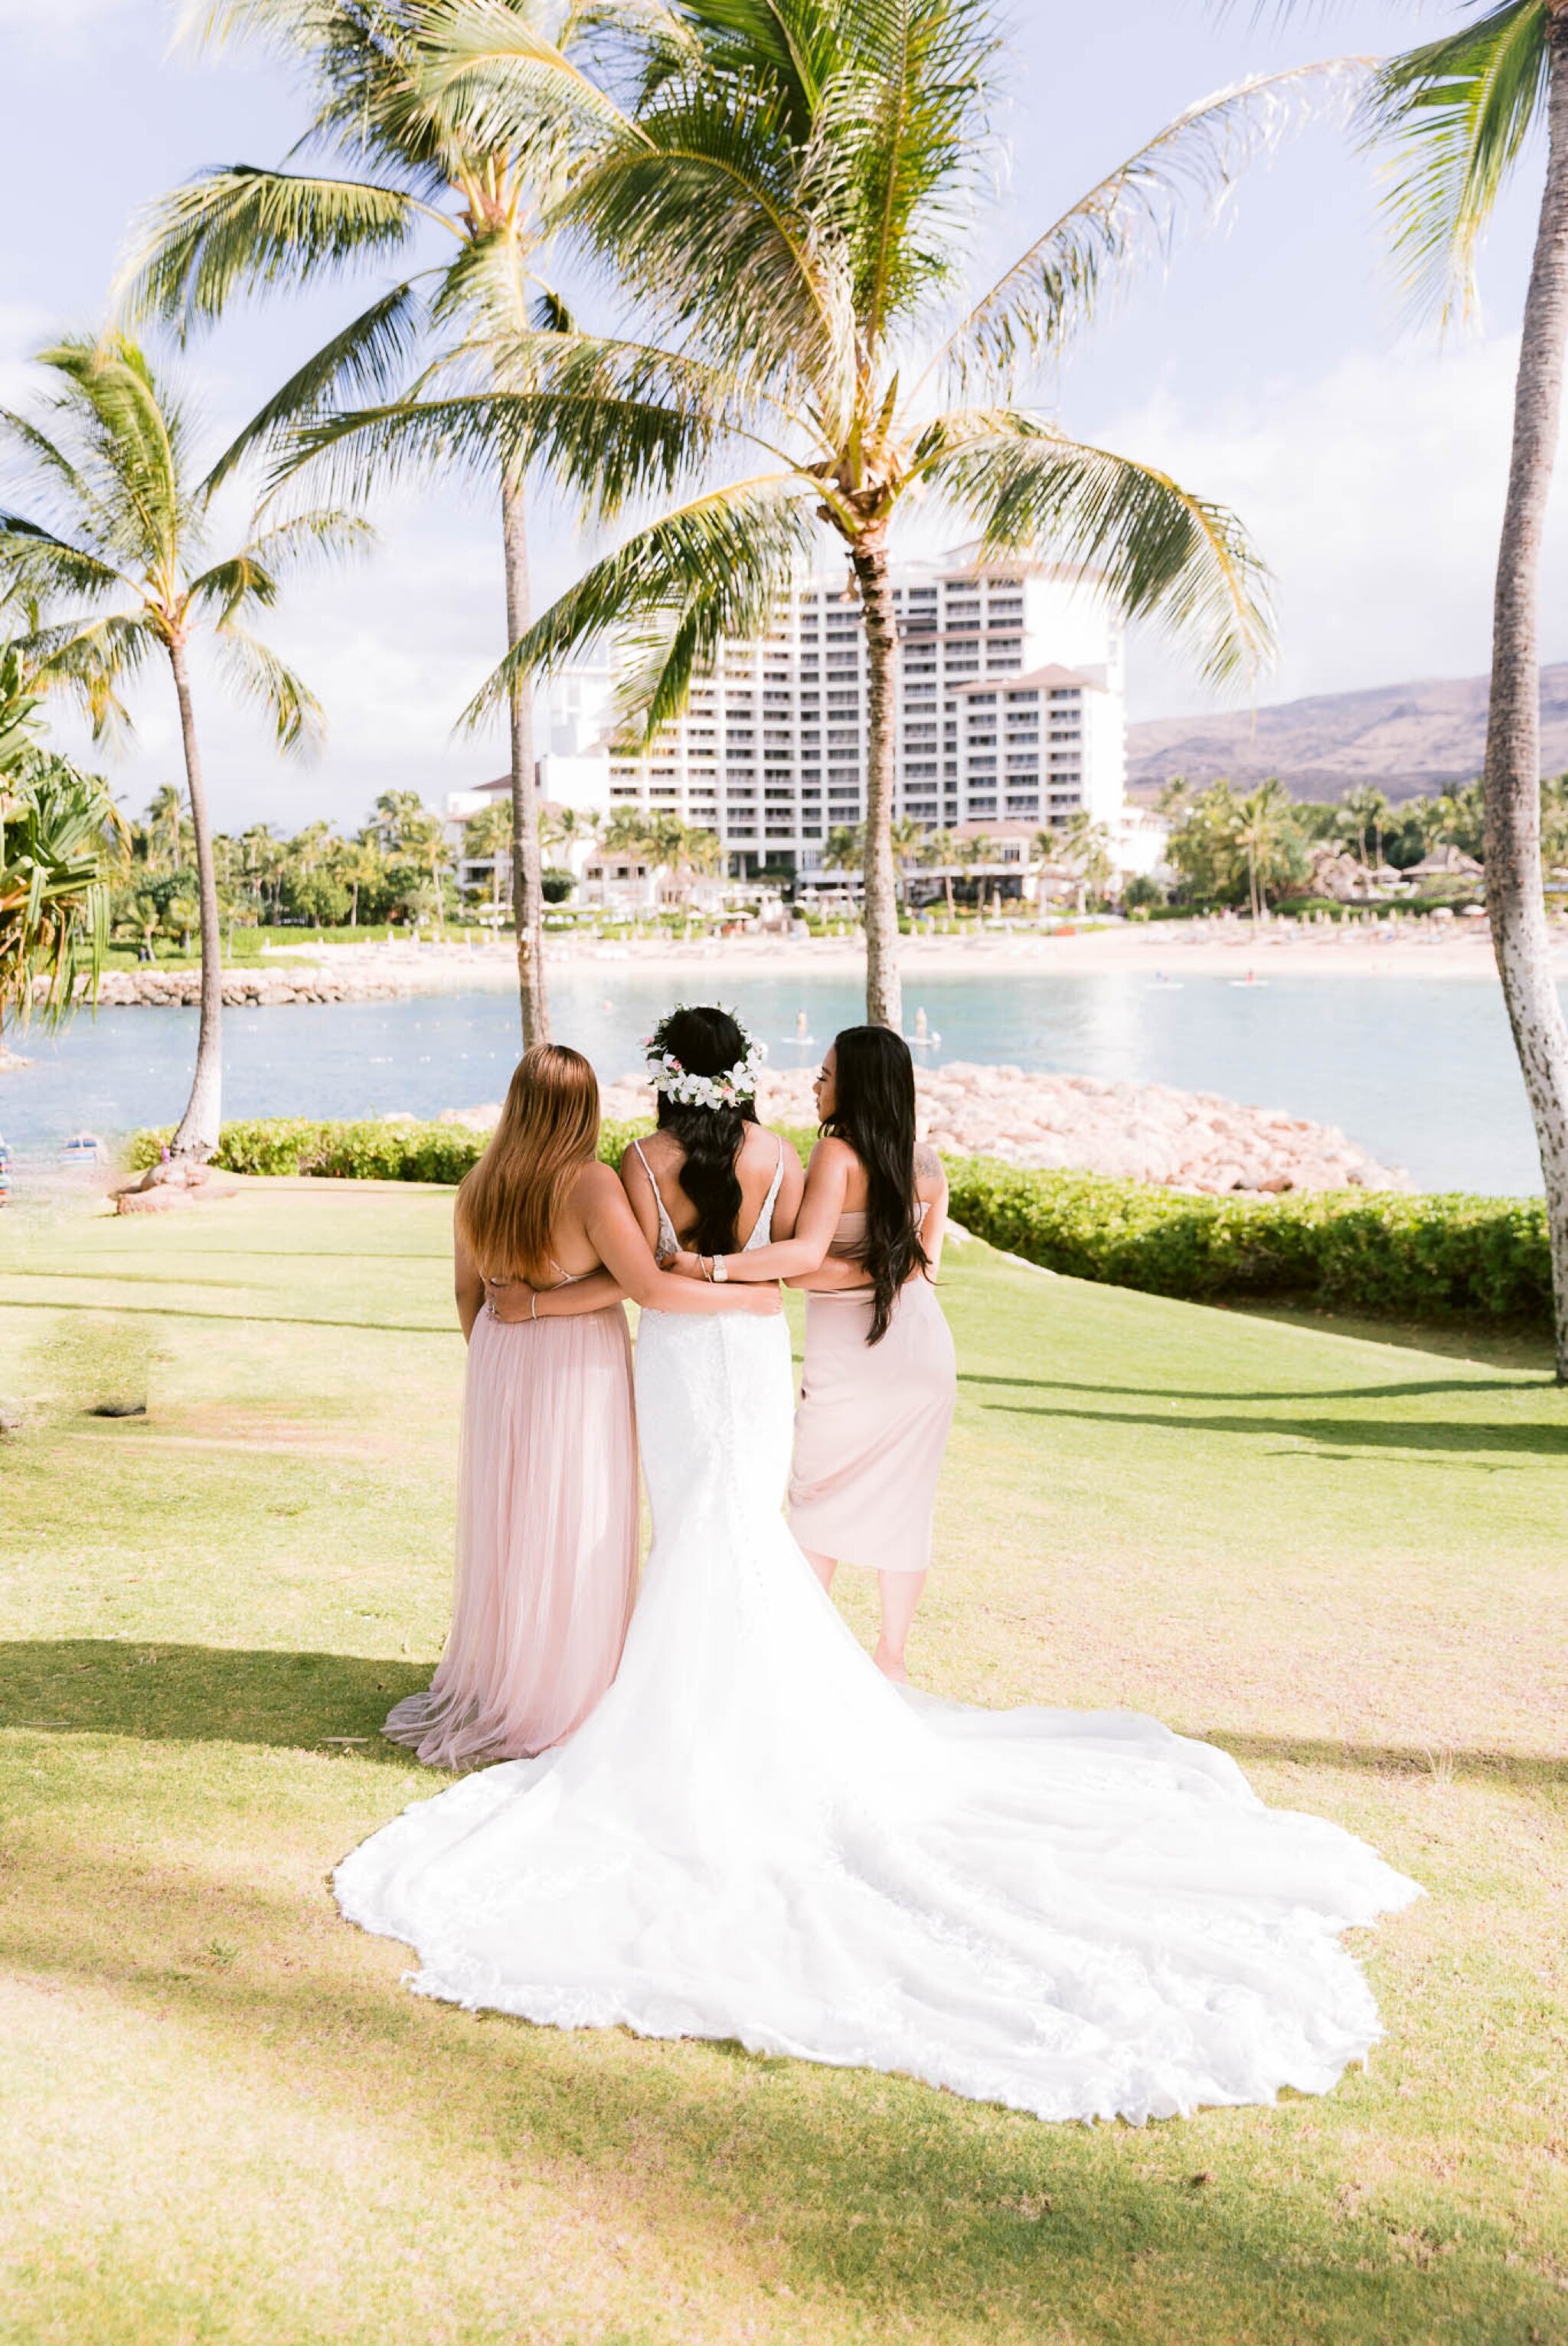 Intimate Wedding at Paradise Cove, Ko Olina - Oahu Hawaii Engagement Photographer